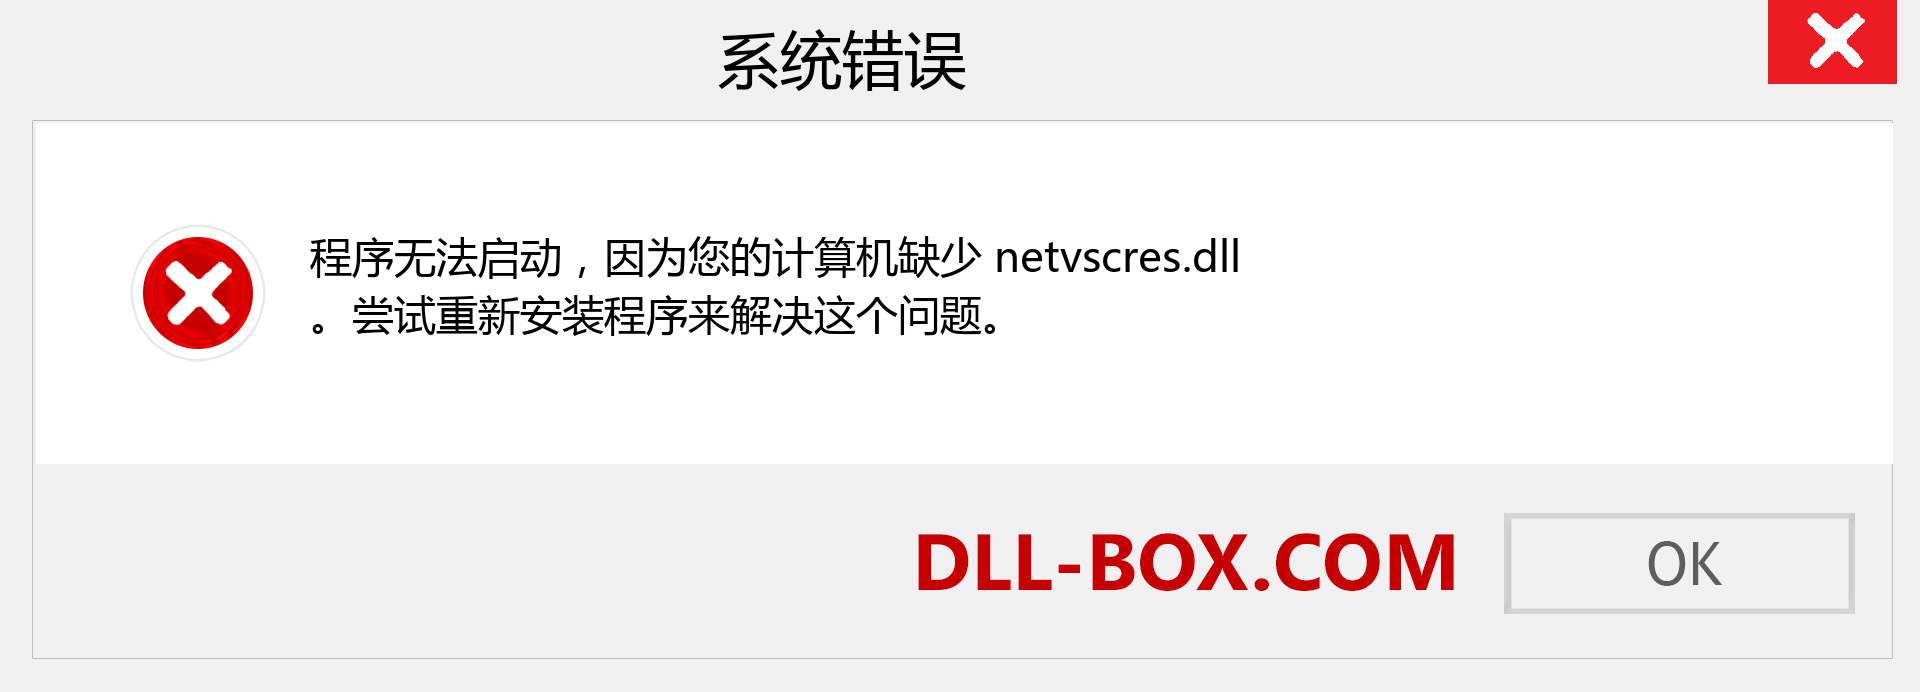 netvscres.dll 文件丢失？。 适用于 Windows 7、8、10 的下载 - 修复 Windows、照片、图像上的 netvscres dll 丢失错误